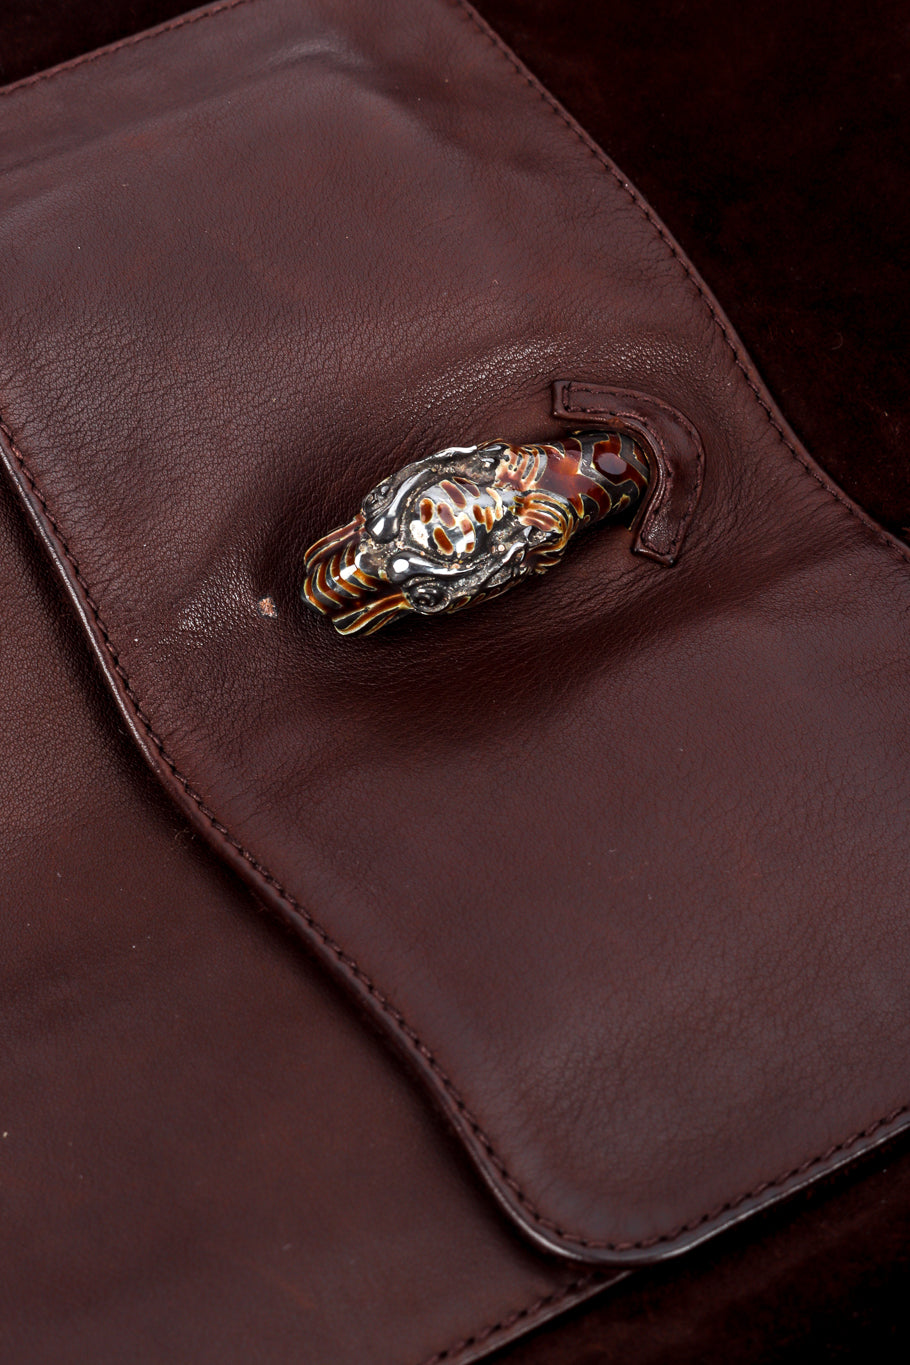 Vintage Gucci Suede and Leather Coat tiger hardware on pocket @recessla